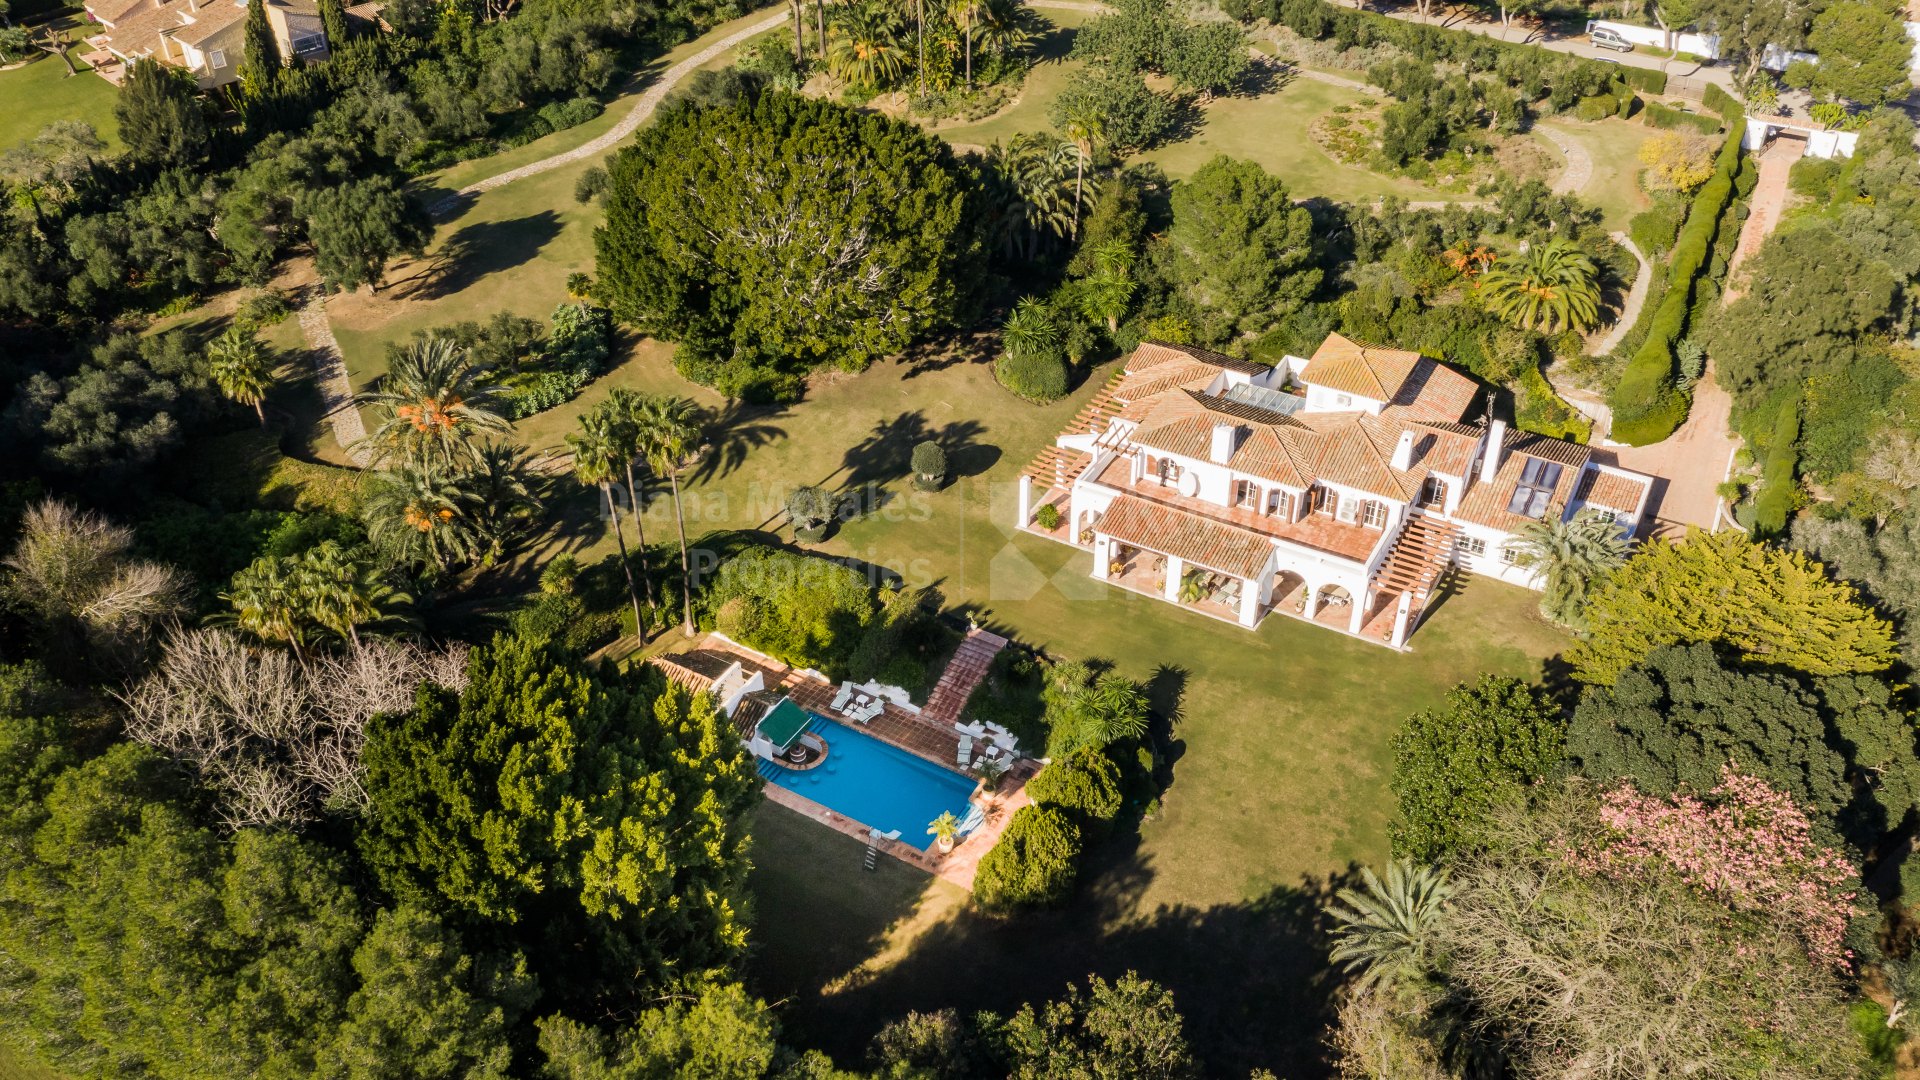 Sotogrande, Excelente inversión: Villa en el golf con gran parcela junto al hoyo 17 de Valderrama